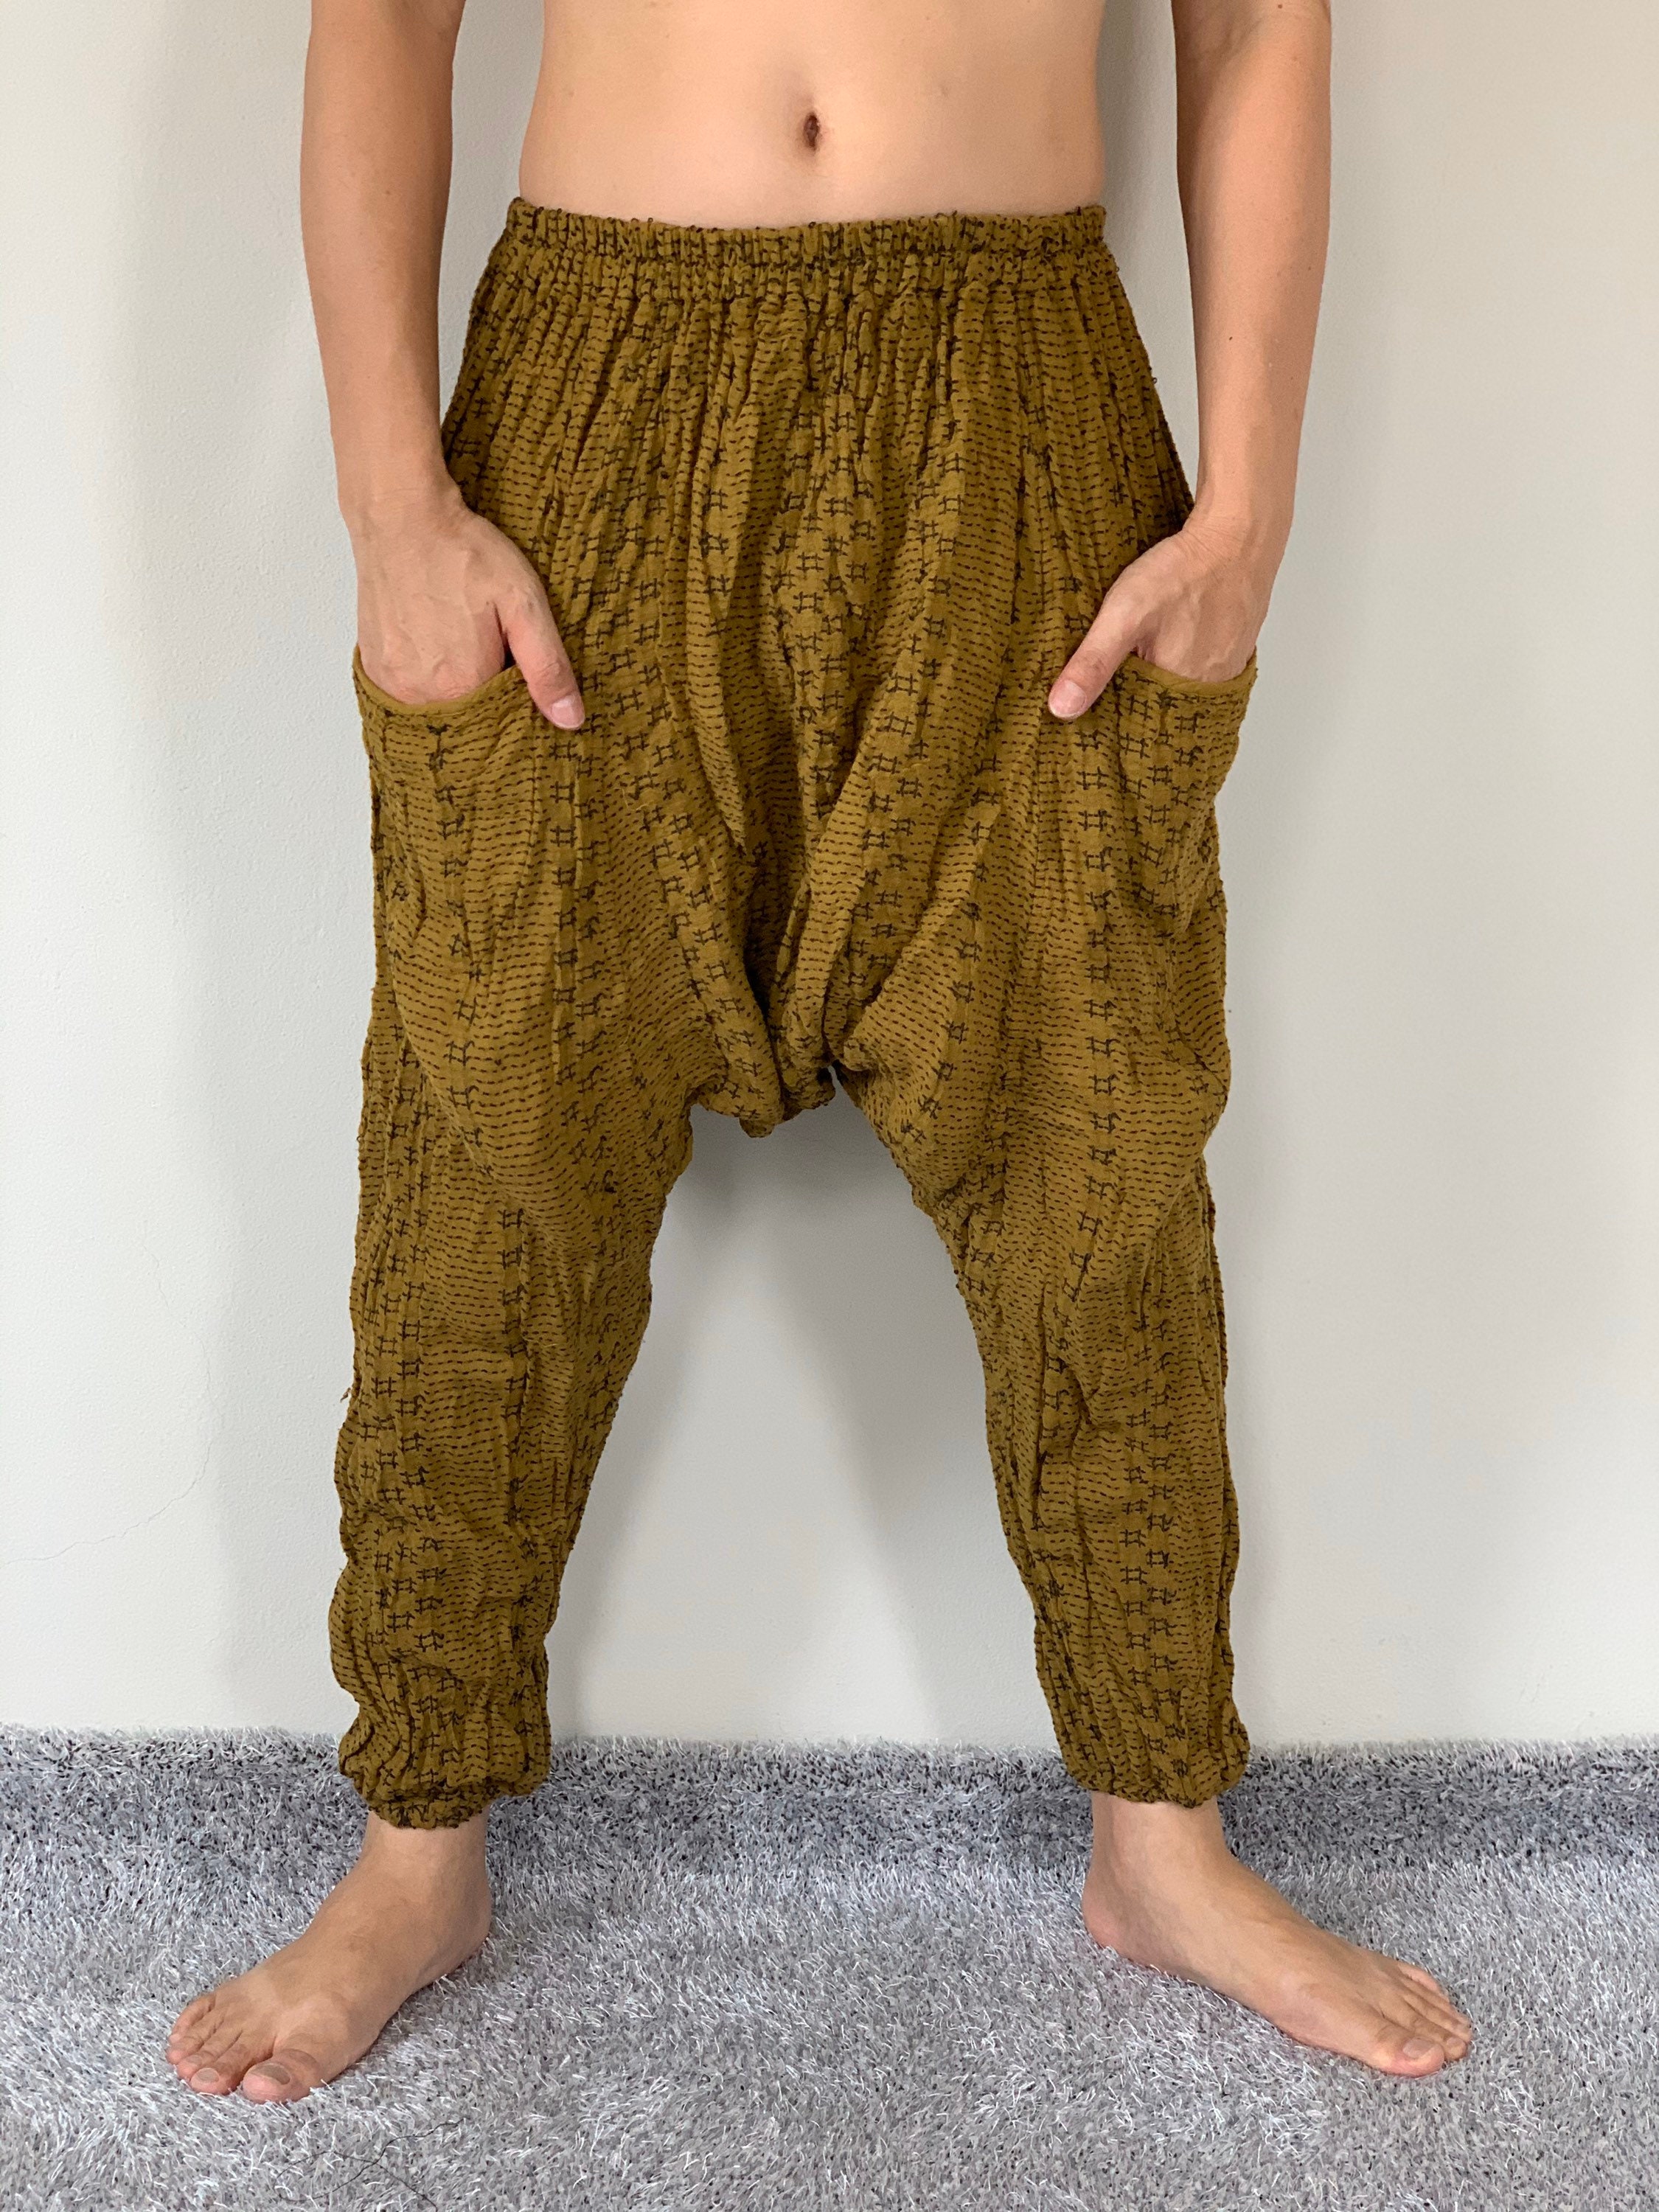 CG0058 Cotton Gauze Pants, Harem Pants Super Soft Rayon Baggy Unisex Harem  Pants Have the flow, Perfect of Yoga 